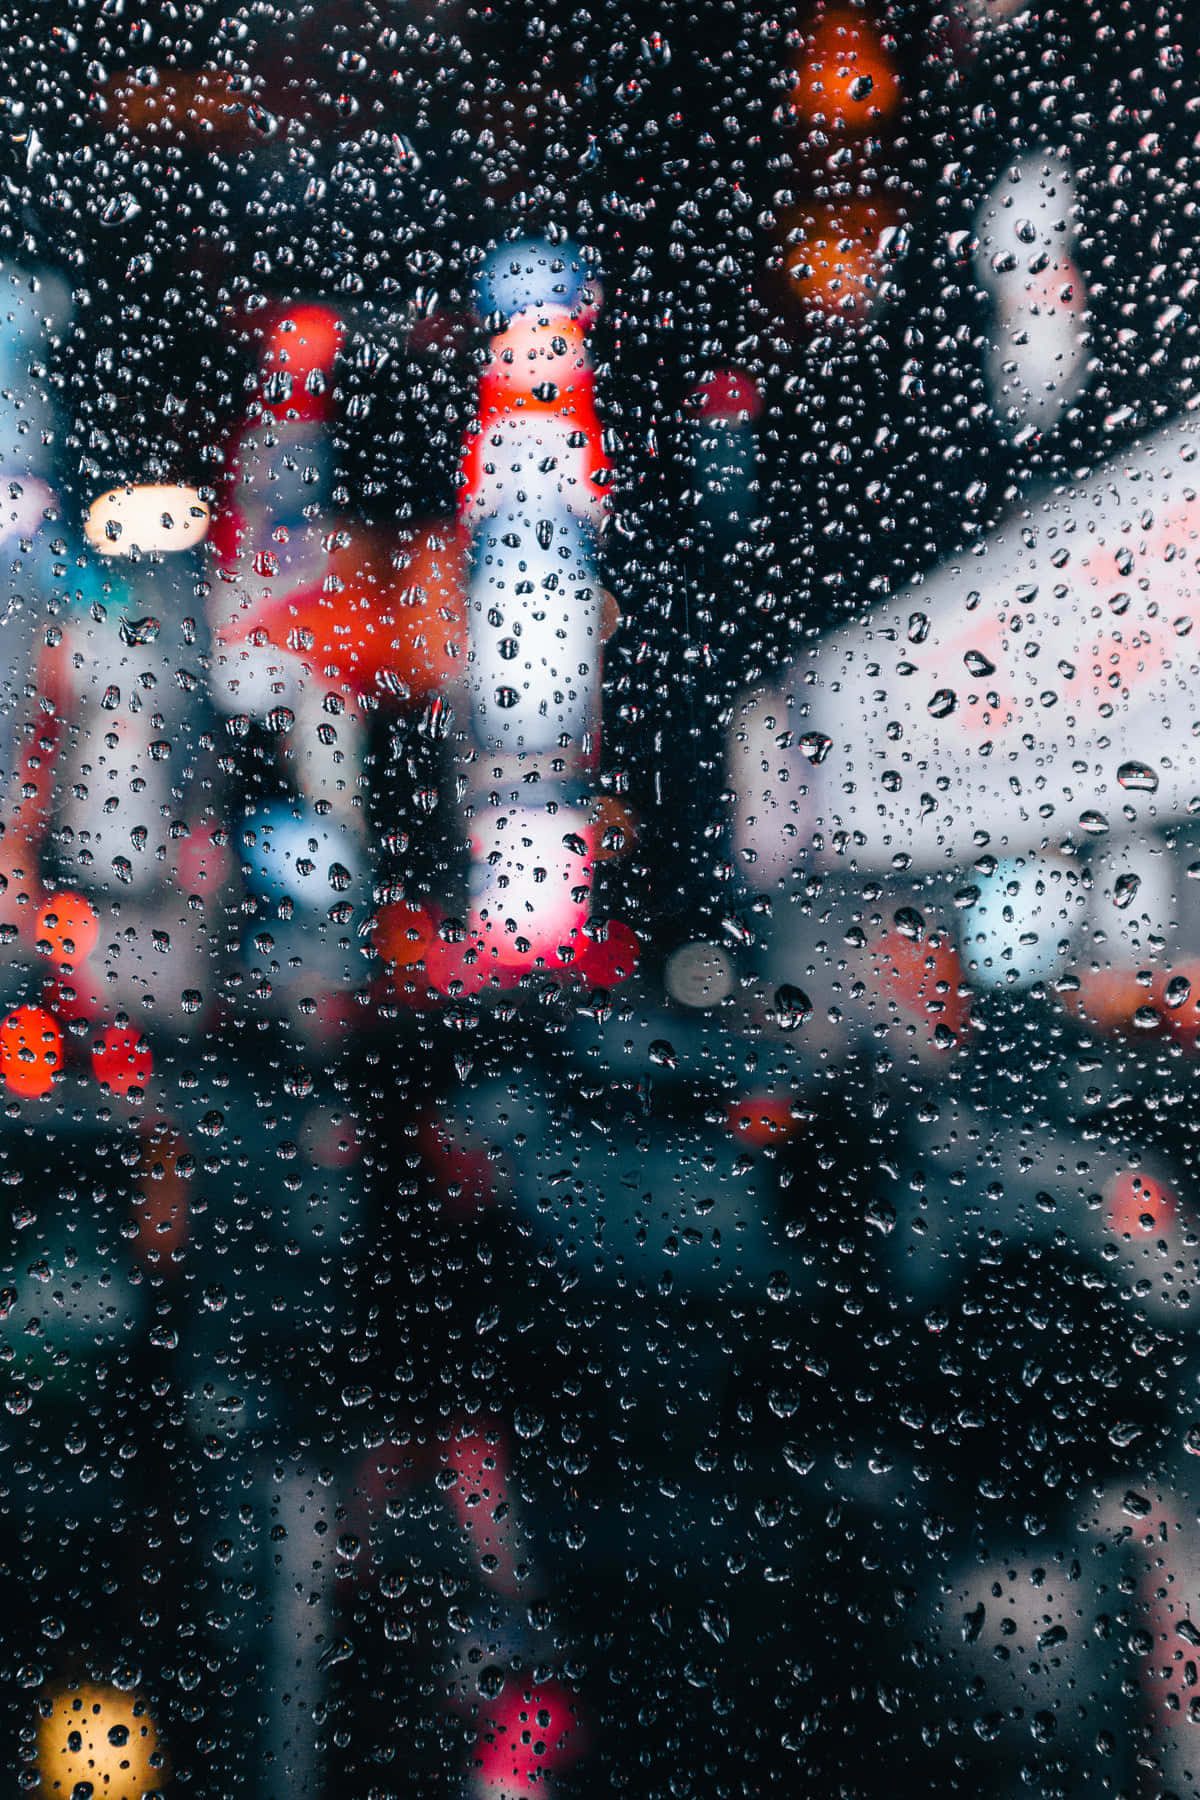 Portrait Rain Drops Blur Cool Photos Background